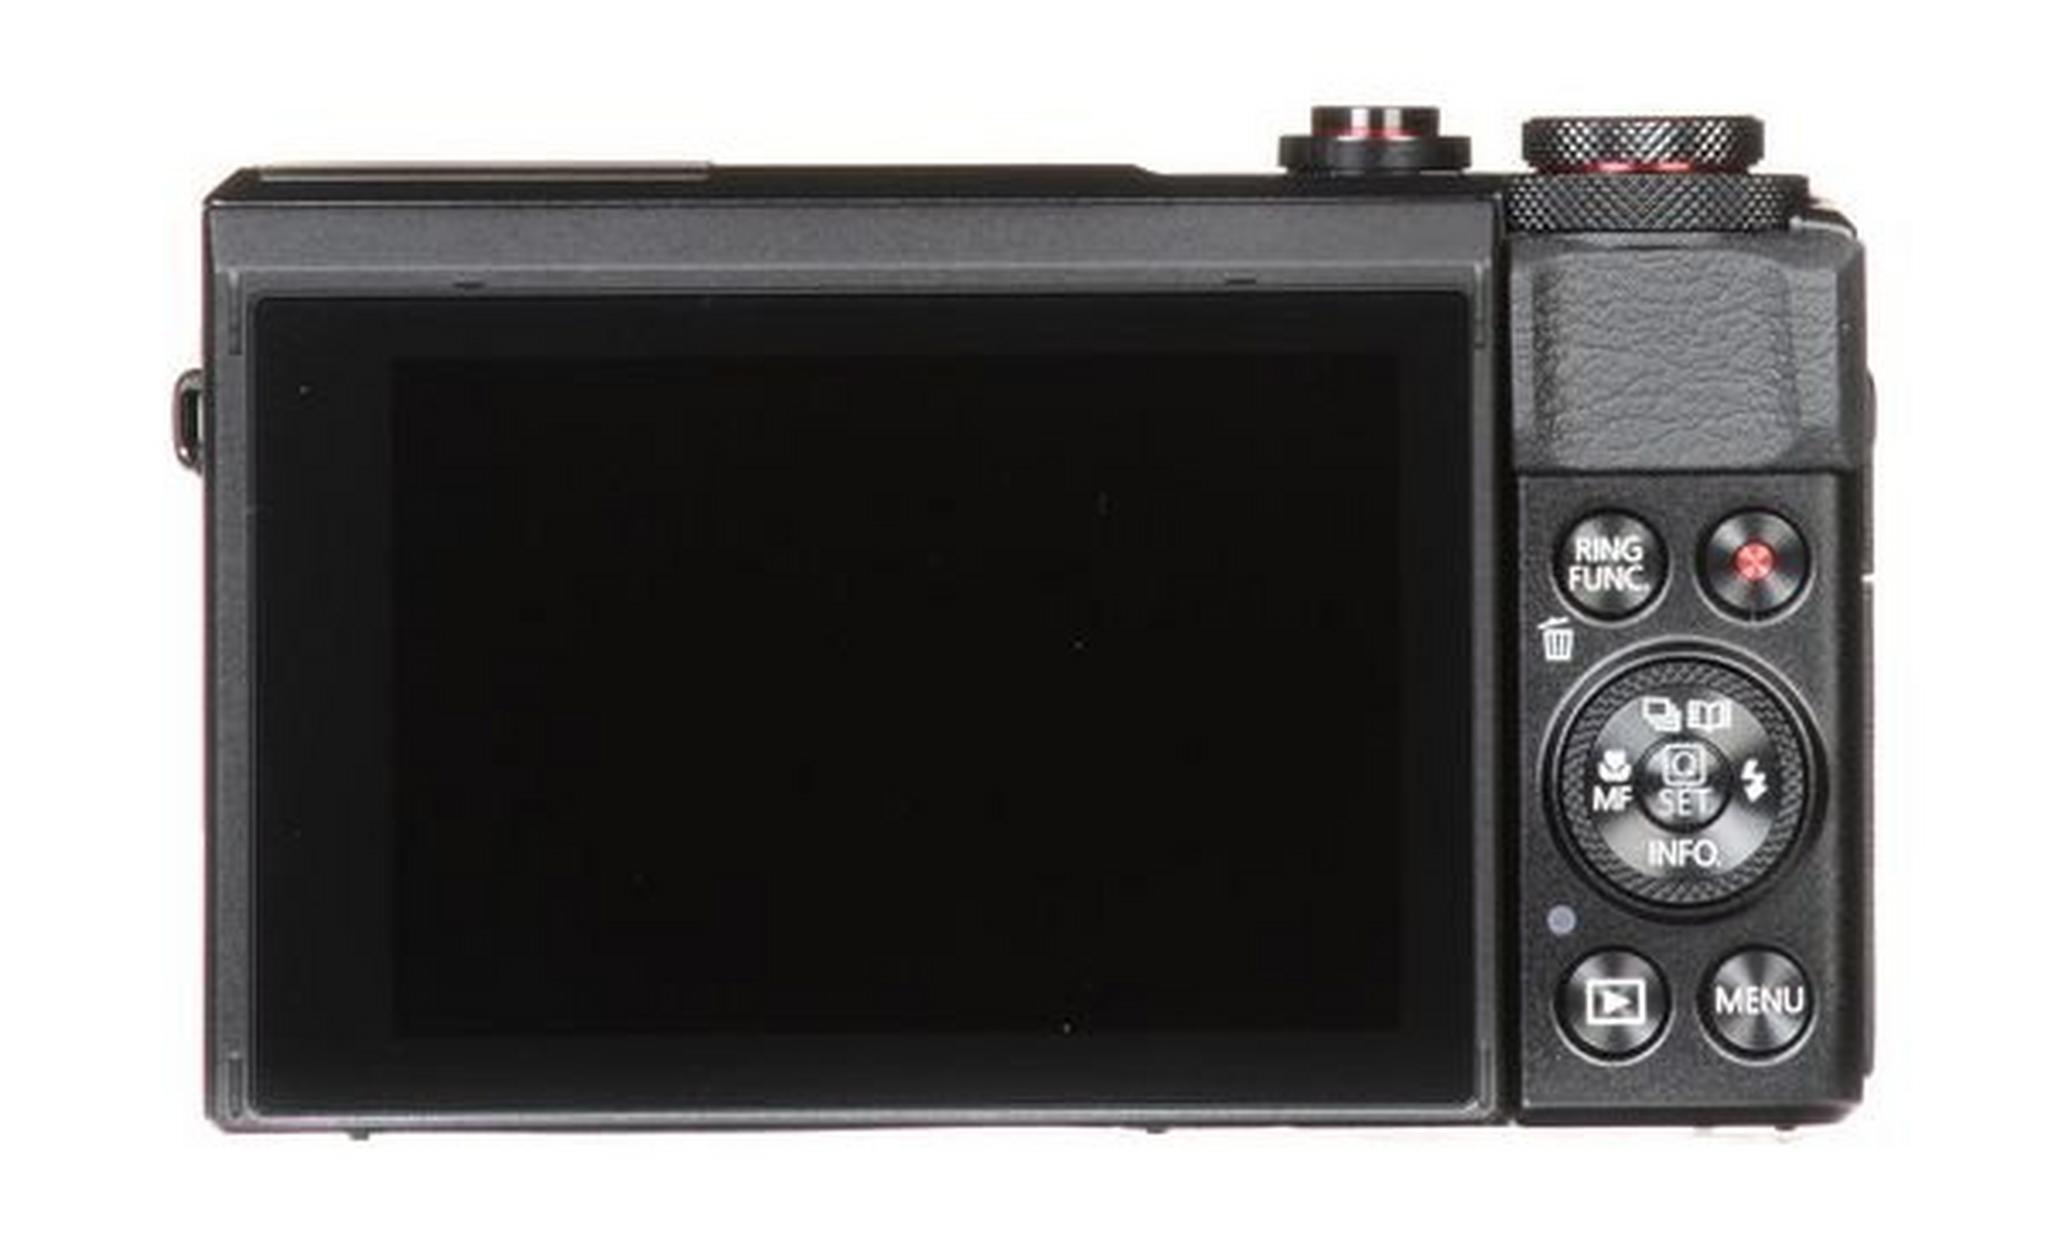 كاميرا كانون باور شوت جي ٧ إكس مارك ٢ الرقمية – مستشعر ٢٠,١ ميجابكسل – شاشة لمس ٣,٠ بوصة (G7 X Mark II)